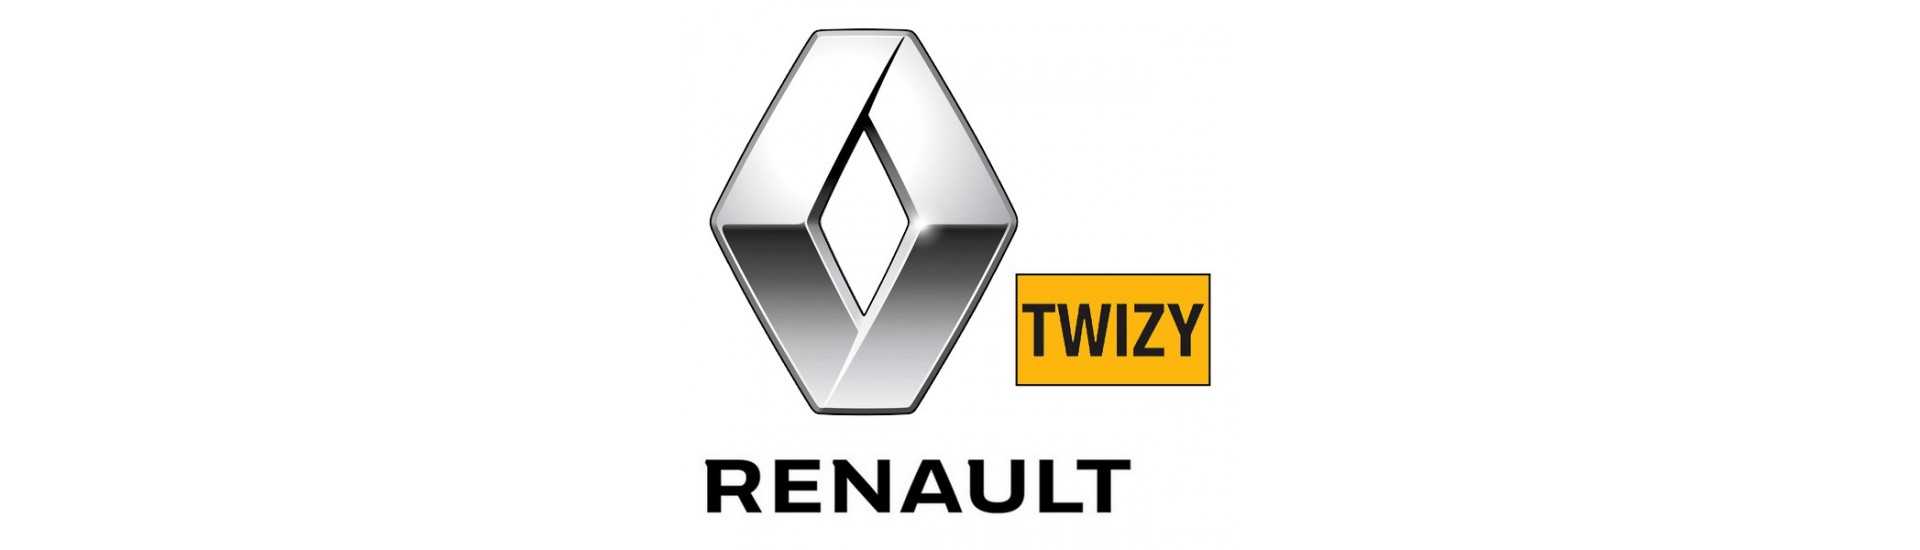 Crémaillère de direction pour voiture sans permis Renault Twizy